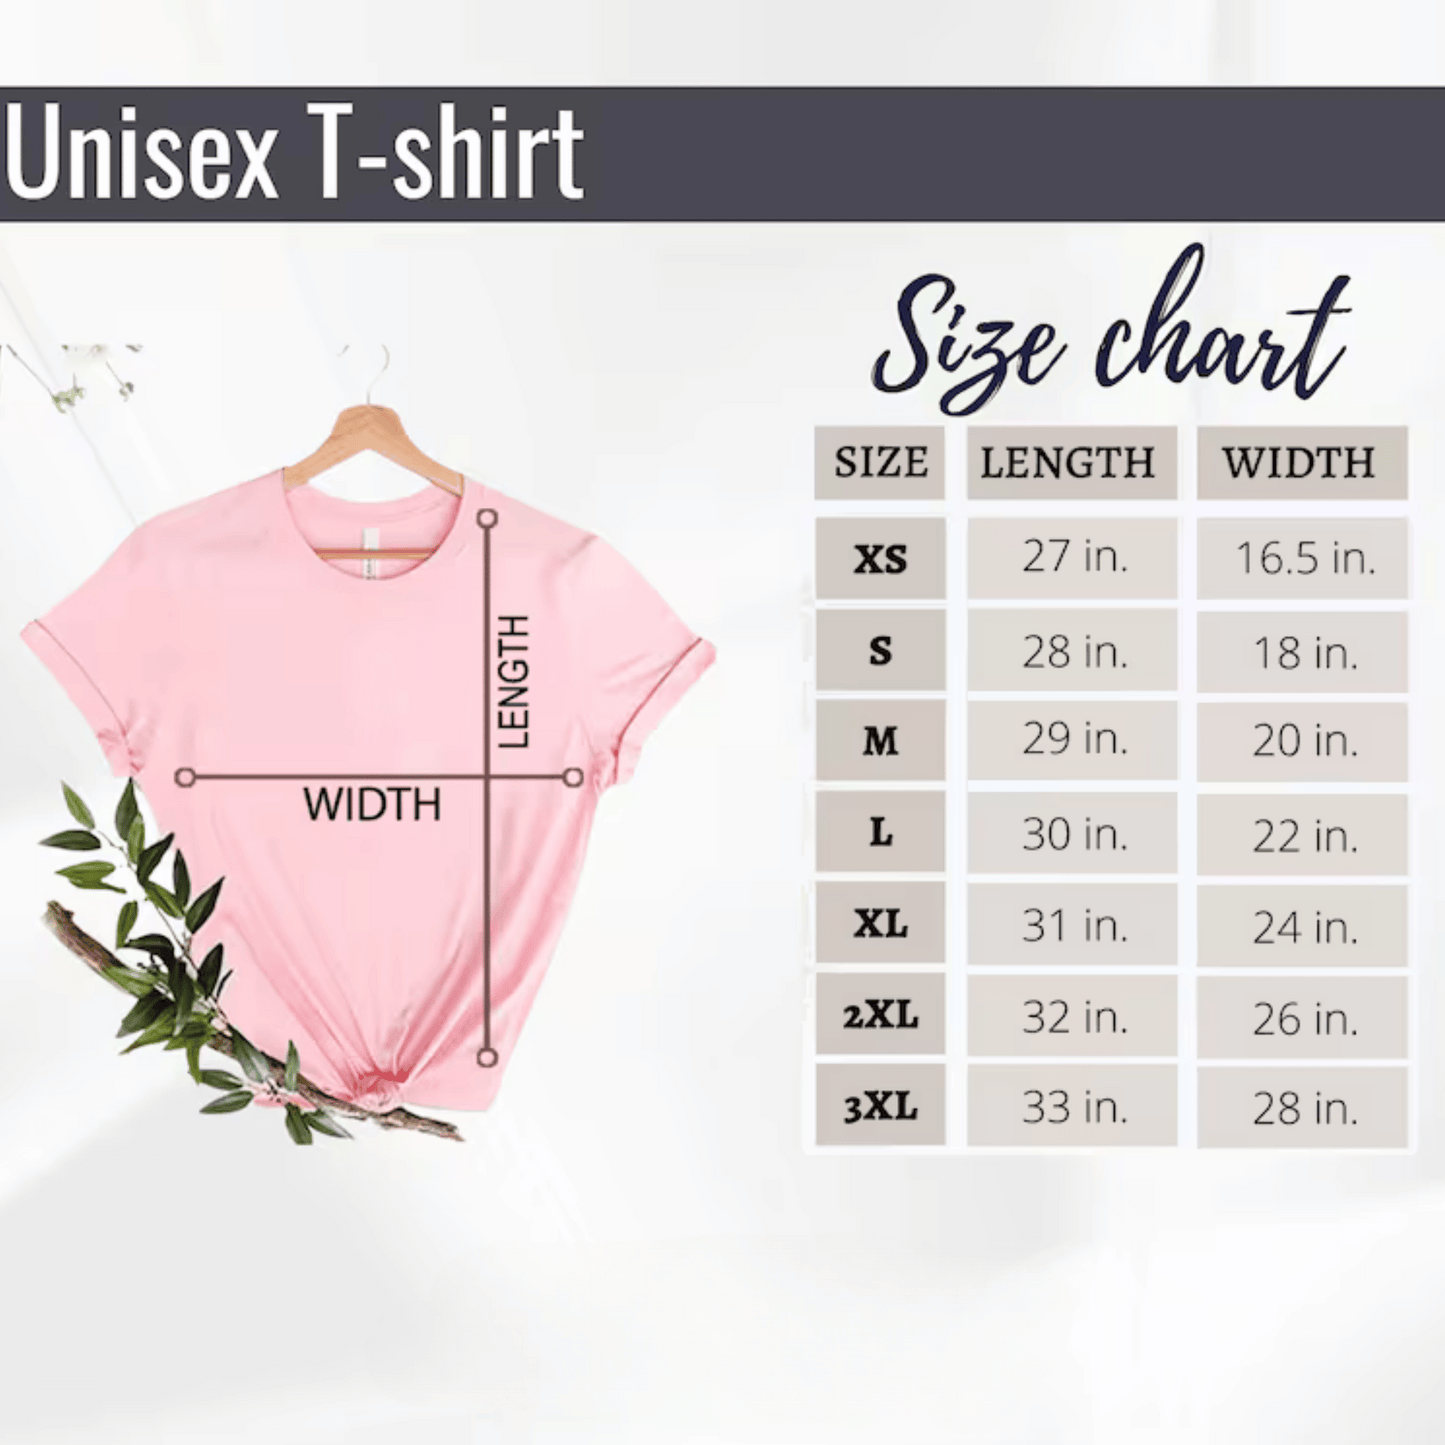 Eras Tour Shirt Swiftie Merch Shirt Size Chart